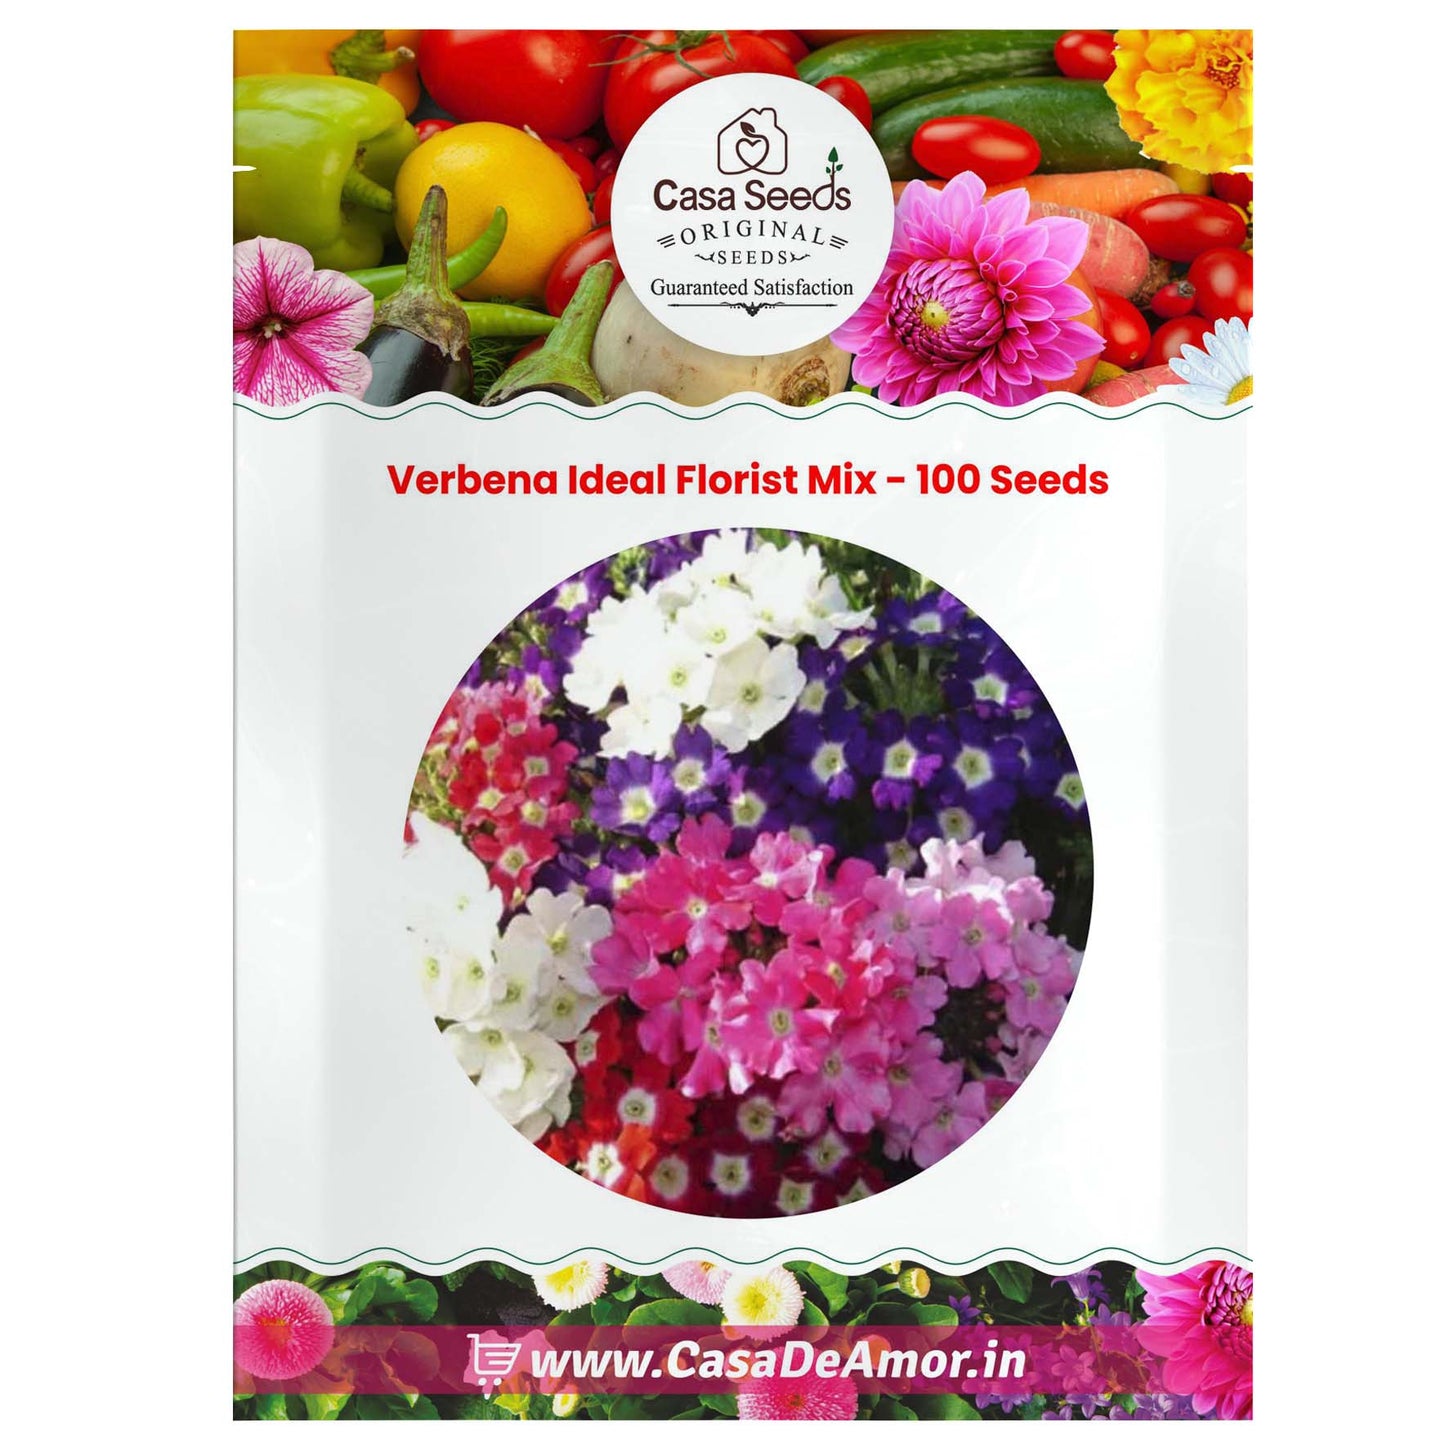 Verbena Ideal Florist Mix - 100 Seeds